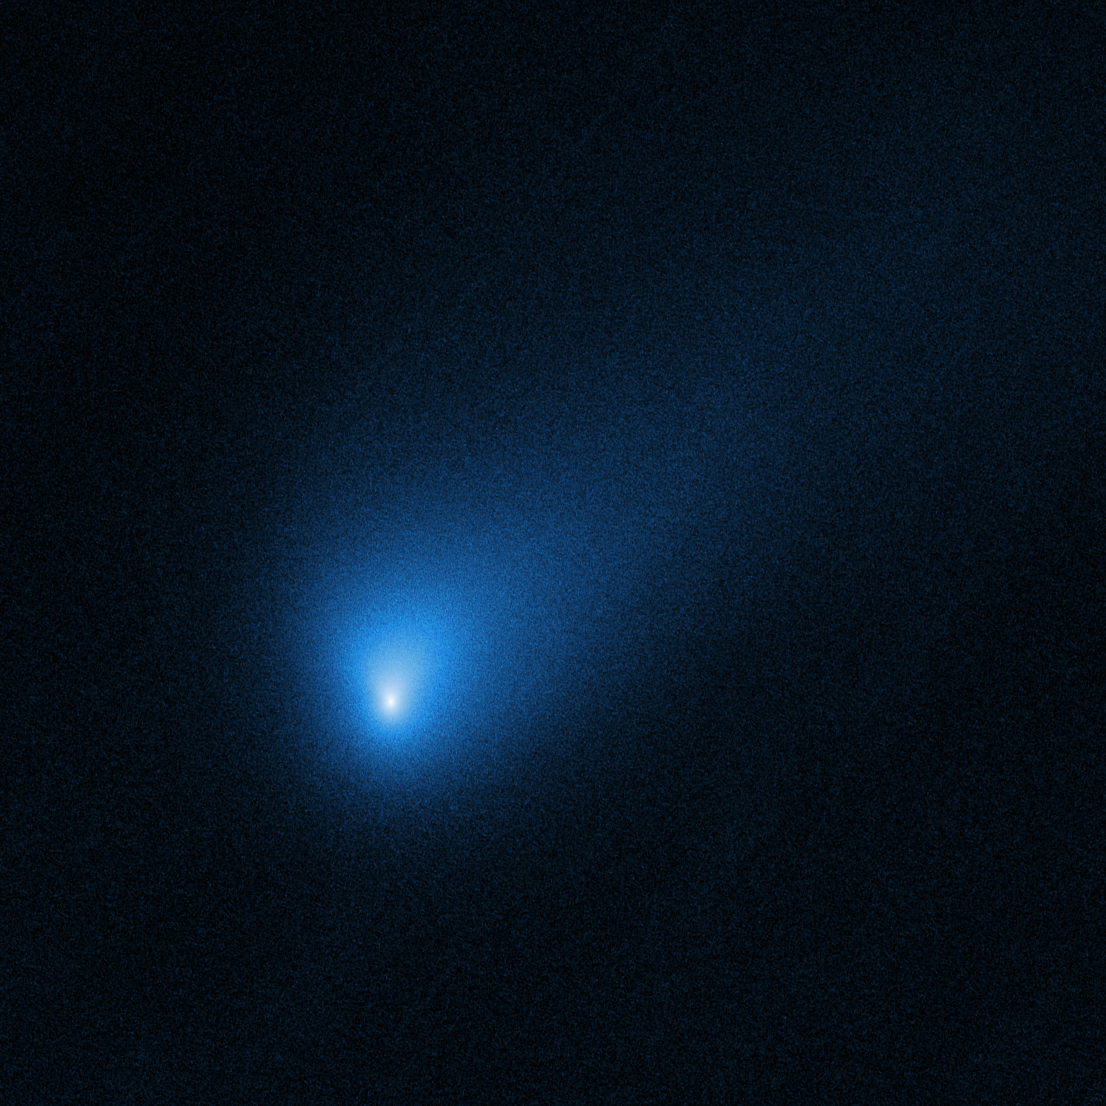 Comet 2I Borisov